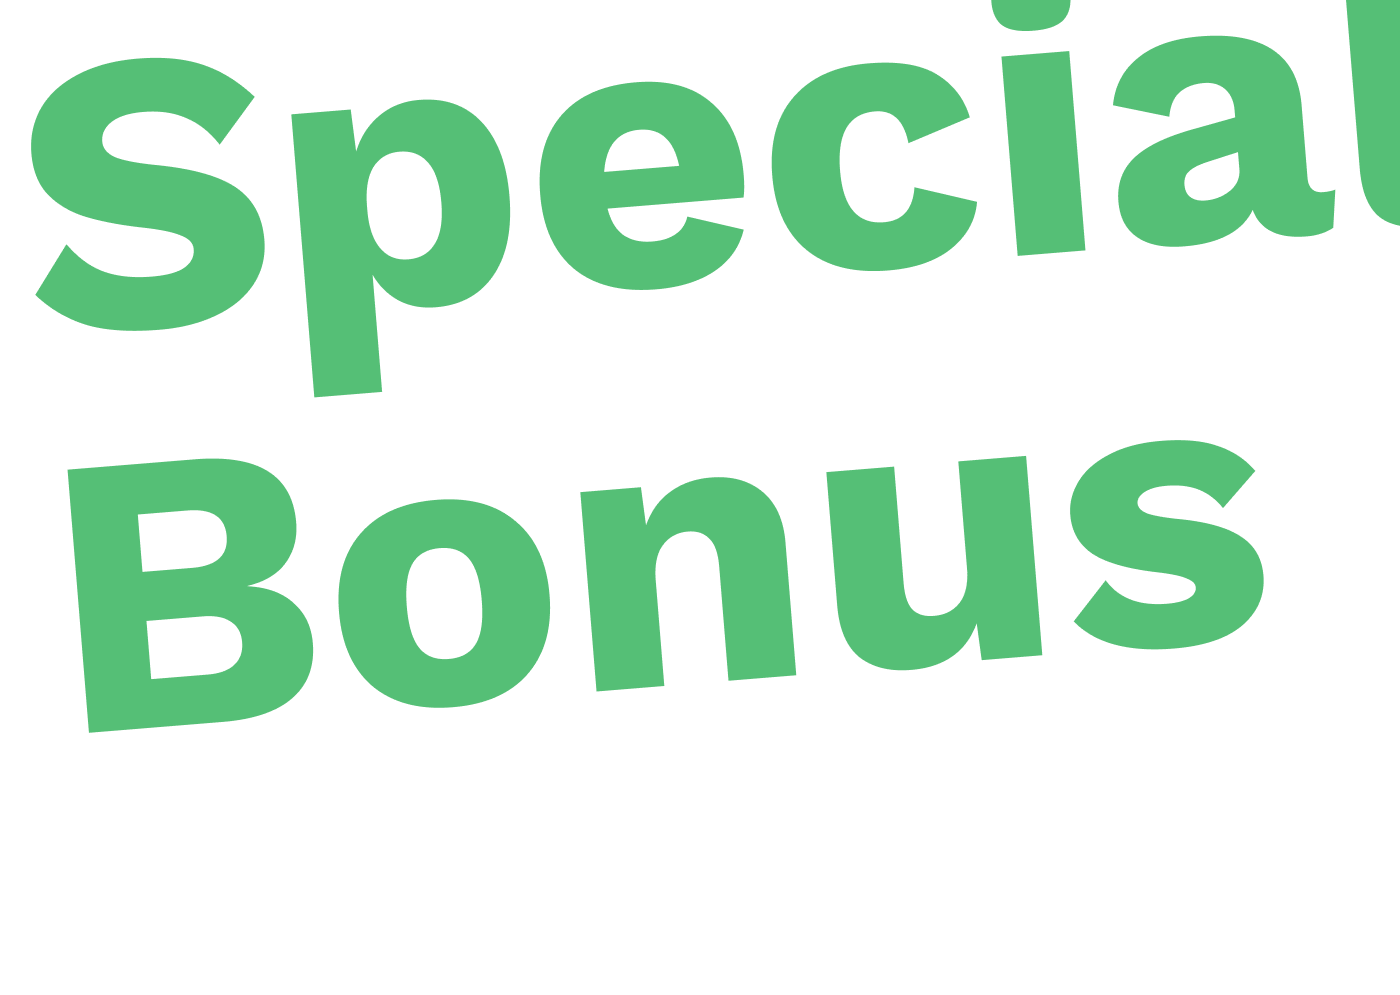 special bonus